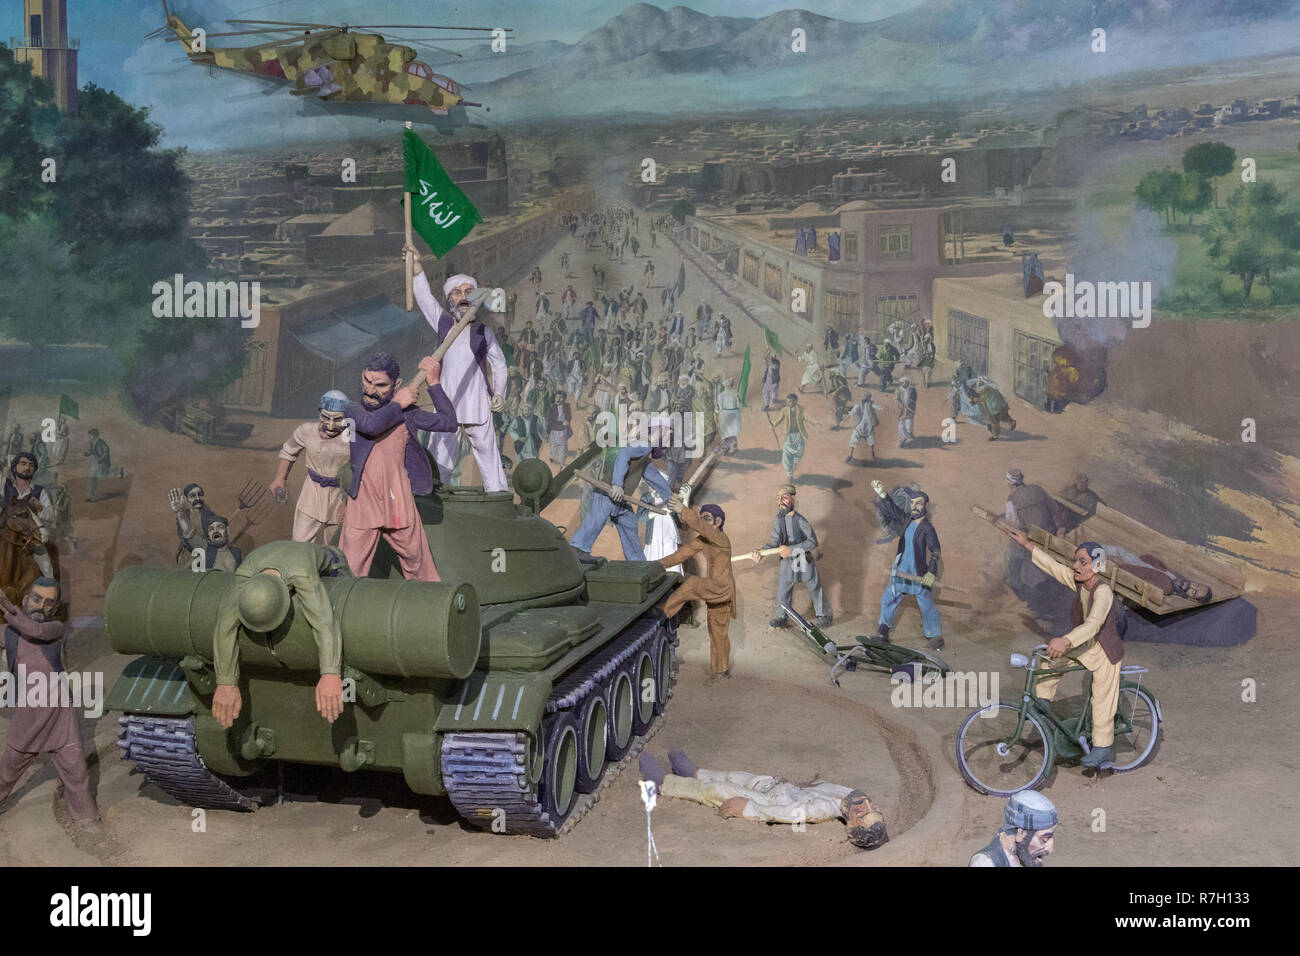 Peinture d'Afghans vaincre les Soviétiques en 2010 Musée du Jihad construit, Herat, province de Herat, Afghanistan Banque D'Images